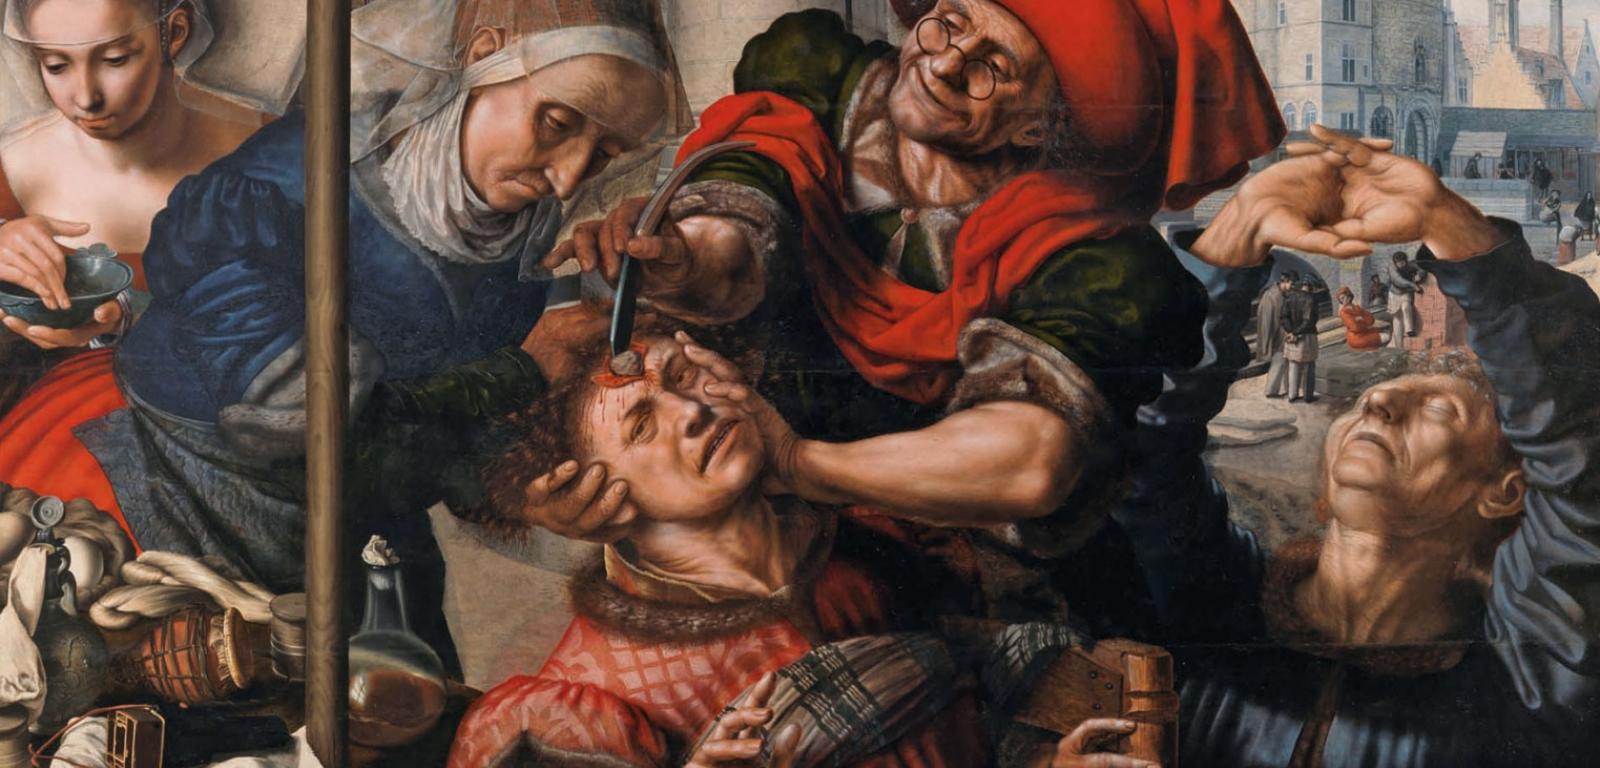 Obraz Jana Sandersa van Hemessena „Usunięcie kamienia obłędu”, znany też pod nazwą „Chirurg” (1555). Dawniej uważano, że taki kamień jest przyczyną zaburzeń psychicznych.